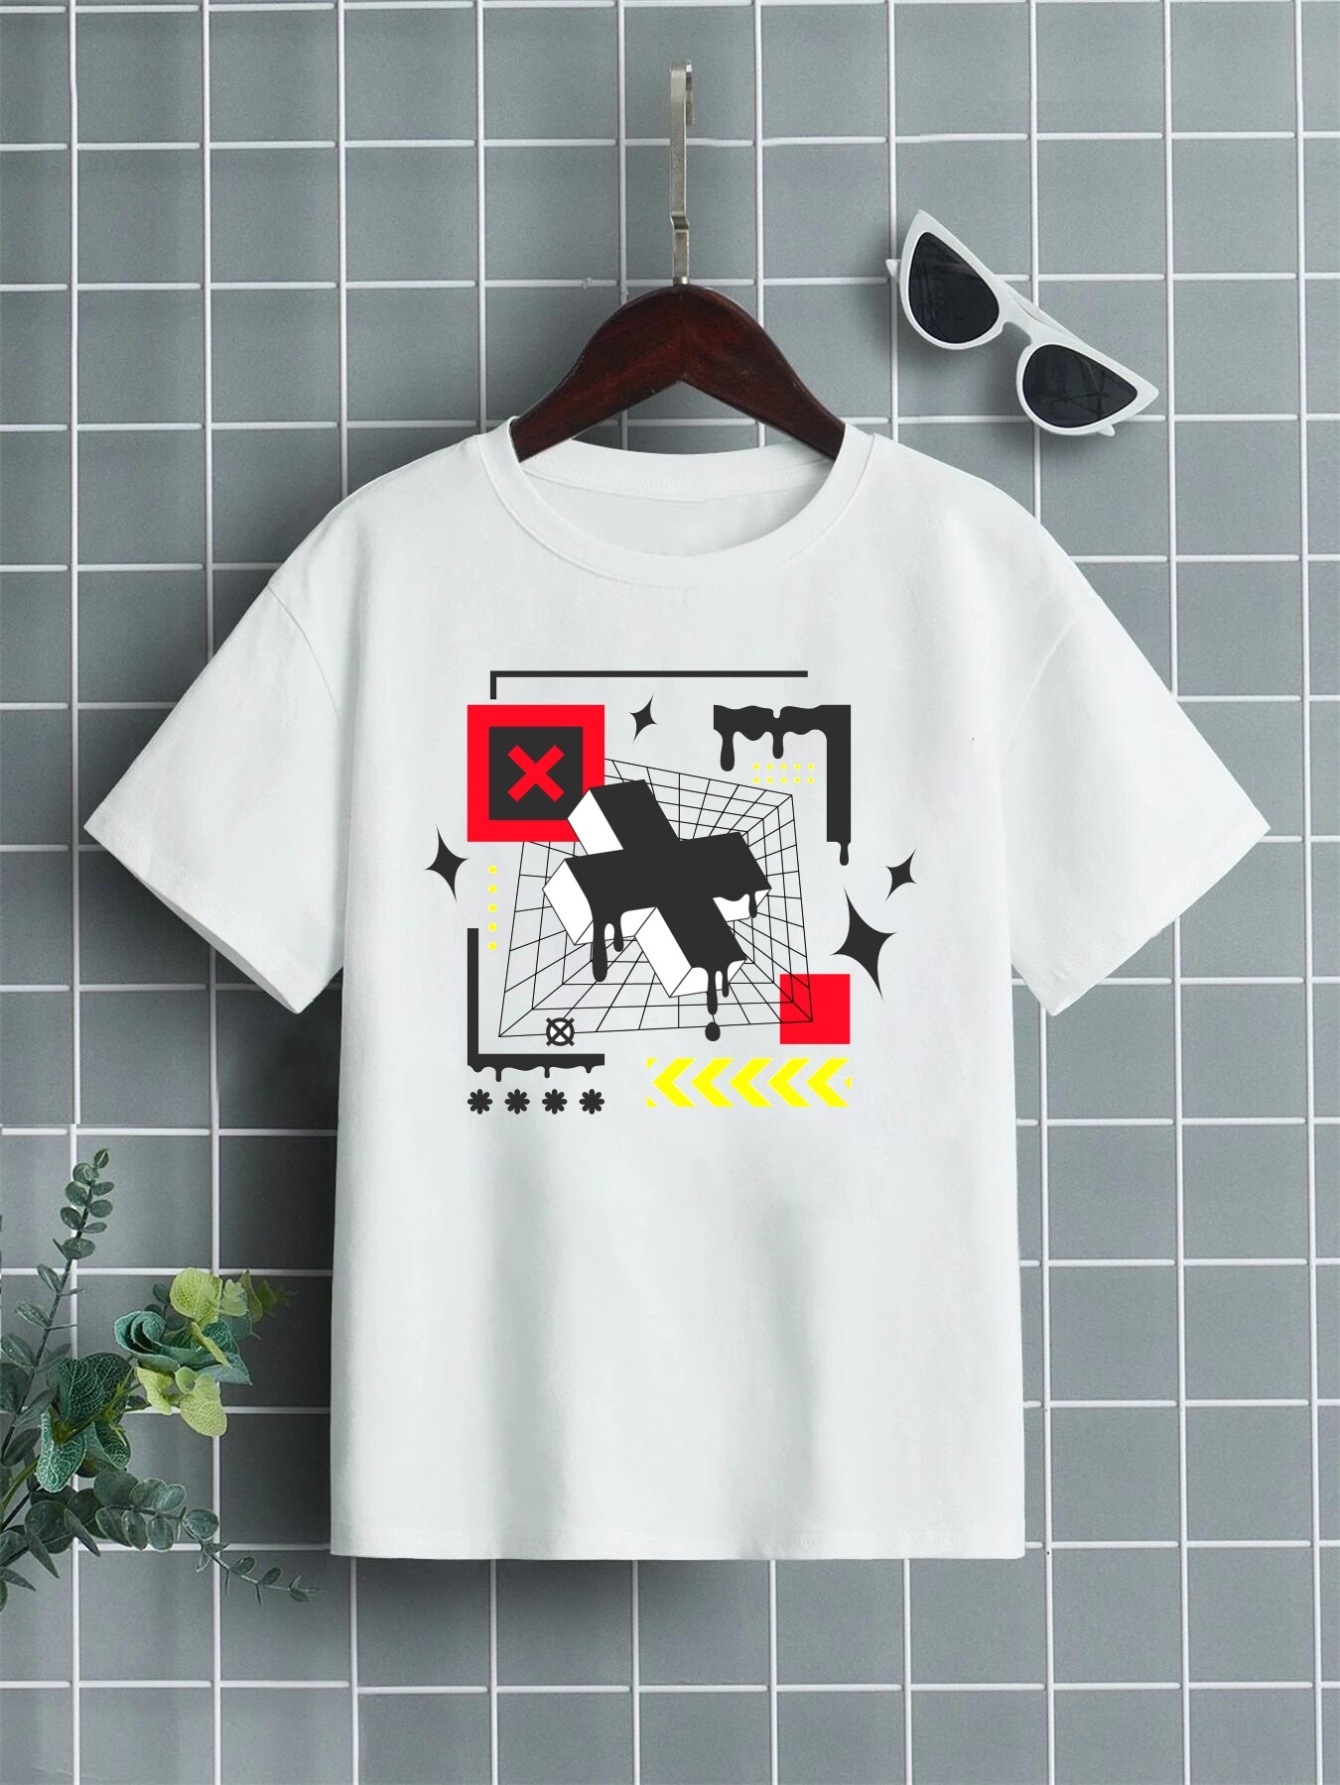 Boys Girls Roblox Summer Casual Short Sleeve 100% Cotton Kids T-Shirt Tops  UK